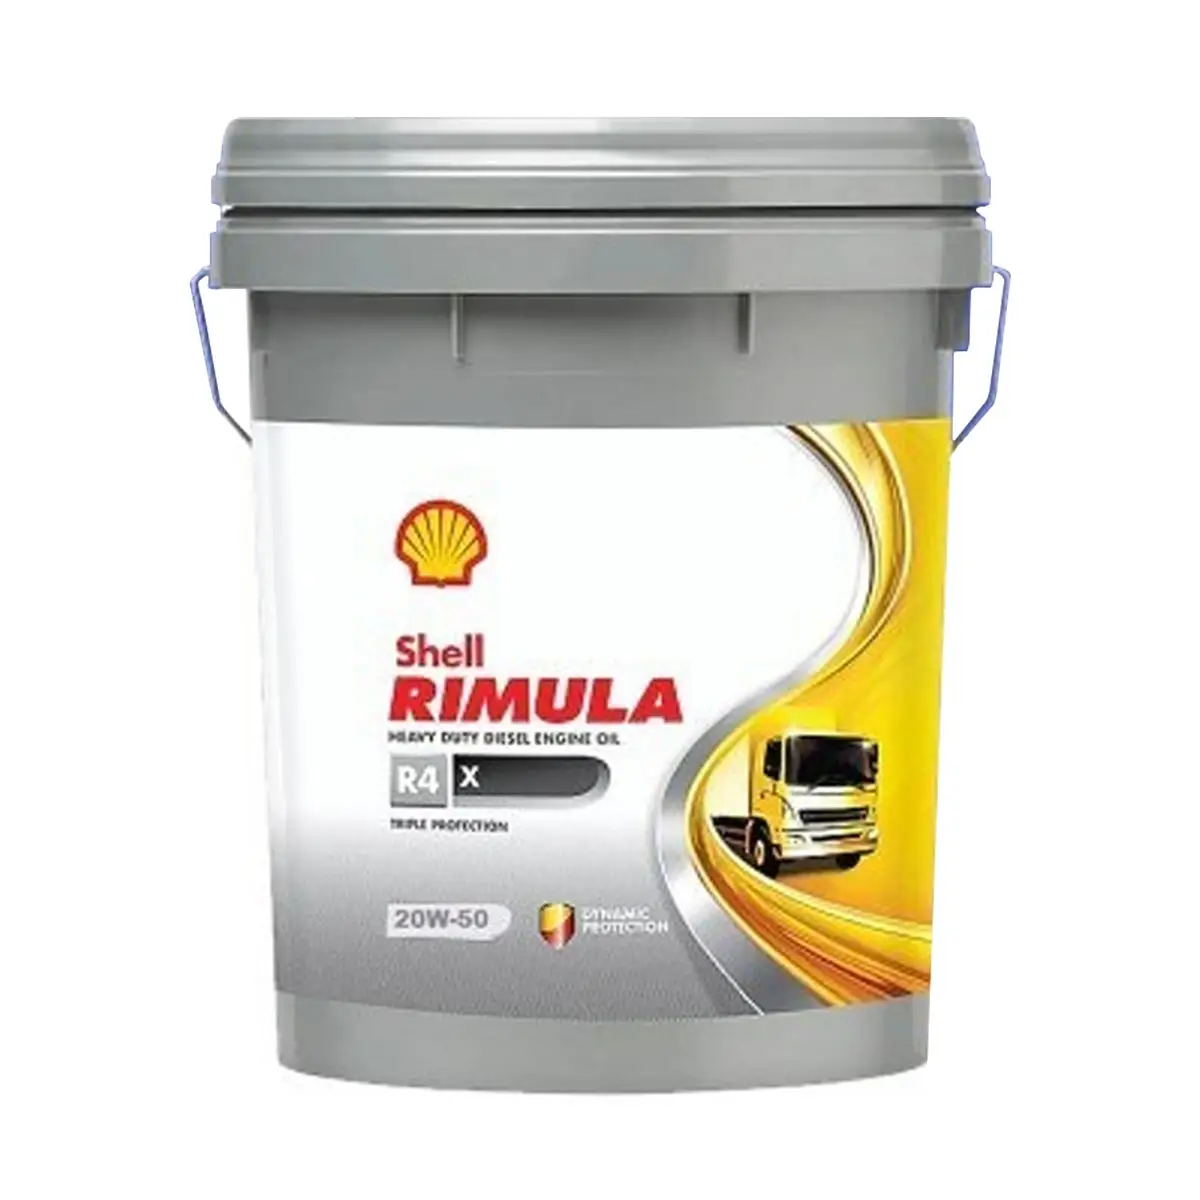 Shell Rimula R4 X Tamaño 18 litros Grado normal para motores diésel Diseñado para actuar como una película protectora para piezas de motor